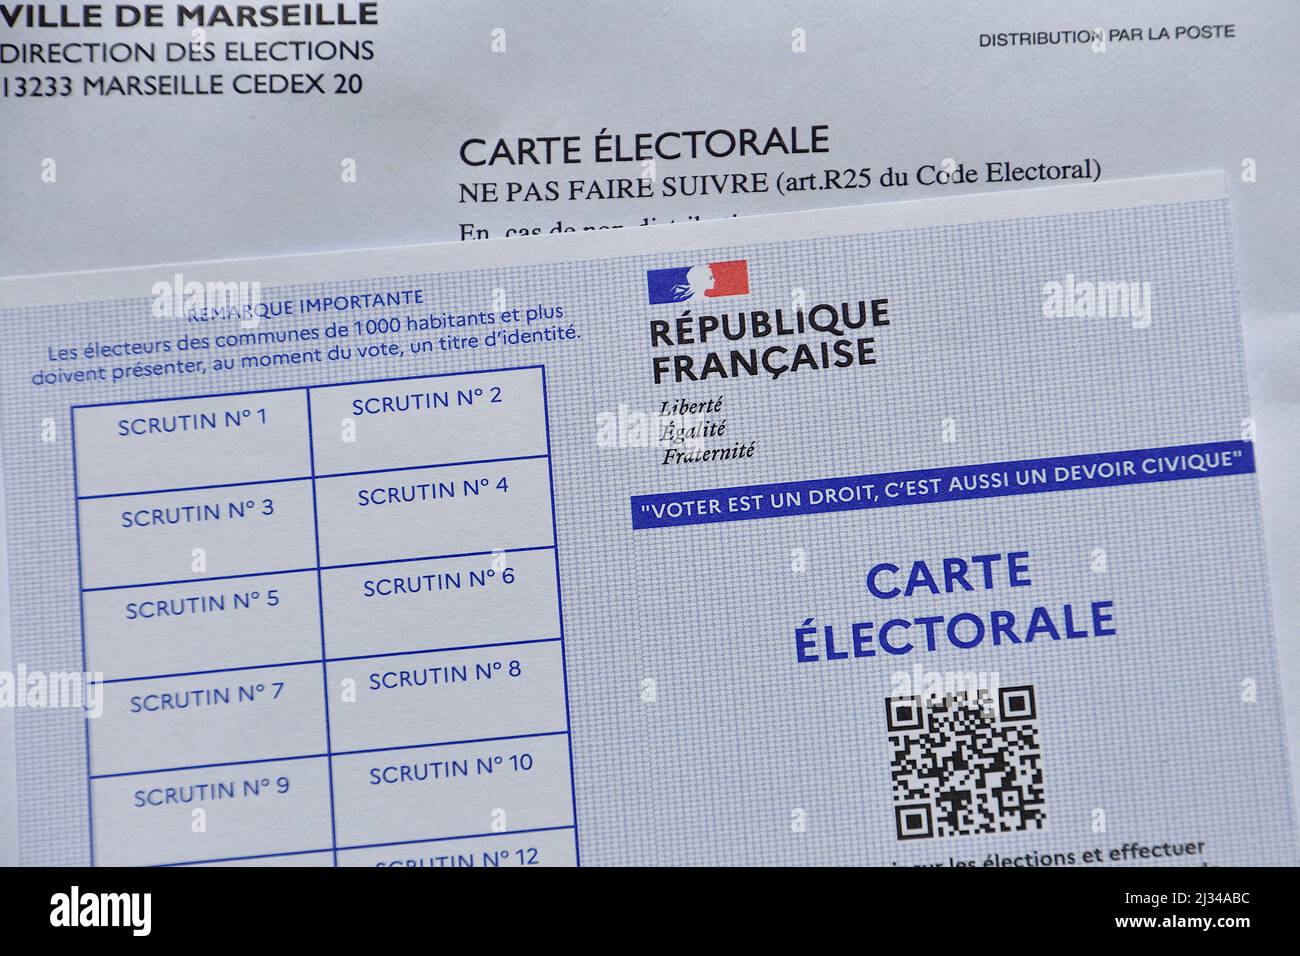 Electoral card Banque de photographies et d'images à haute résolution -  Alamy